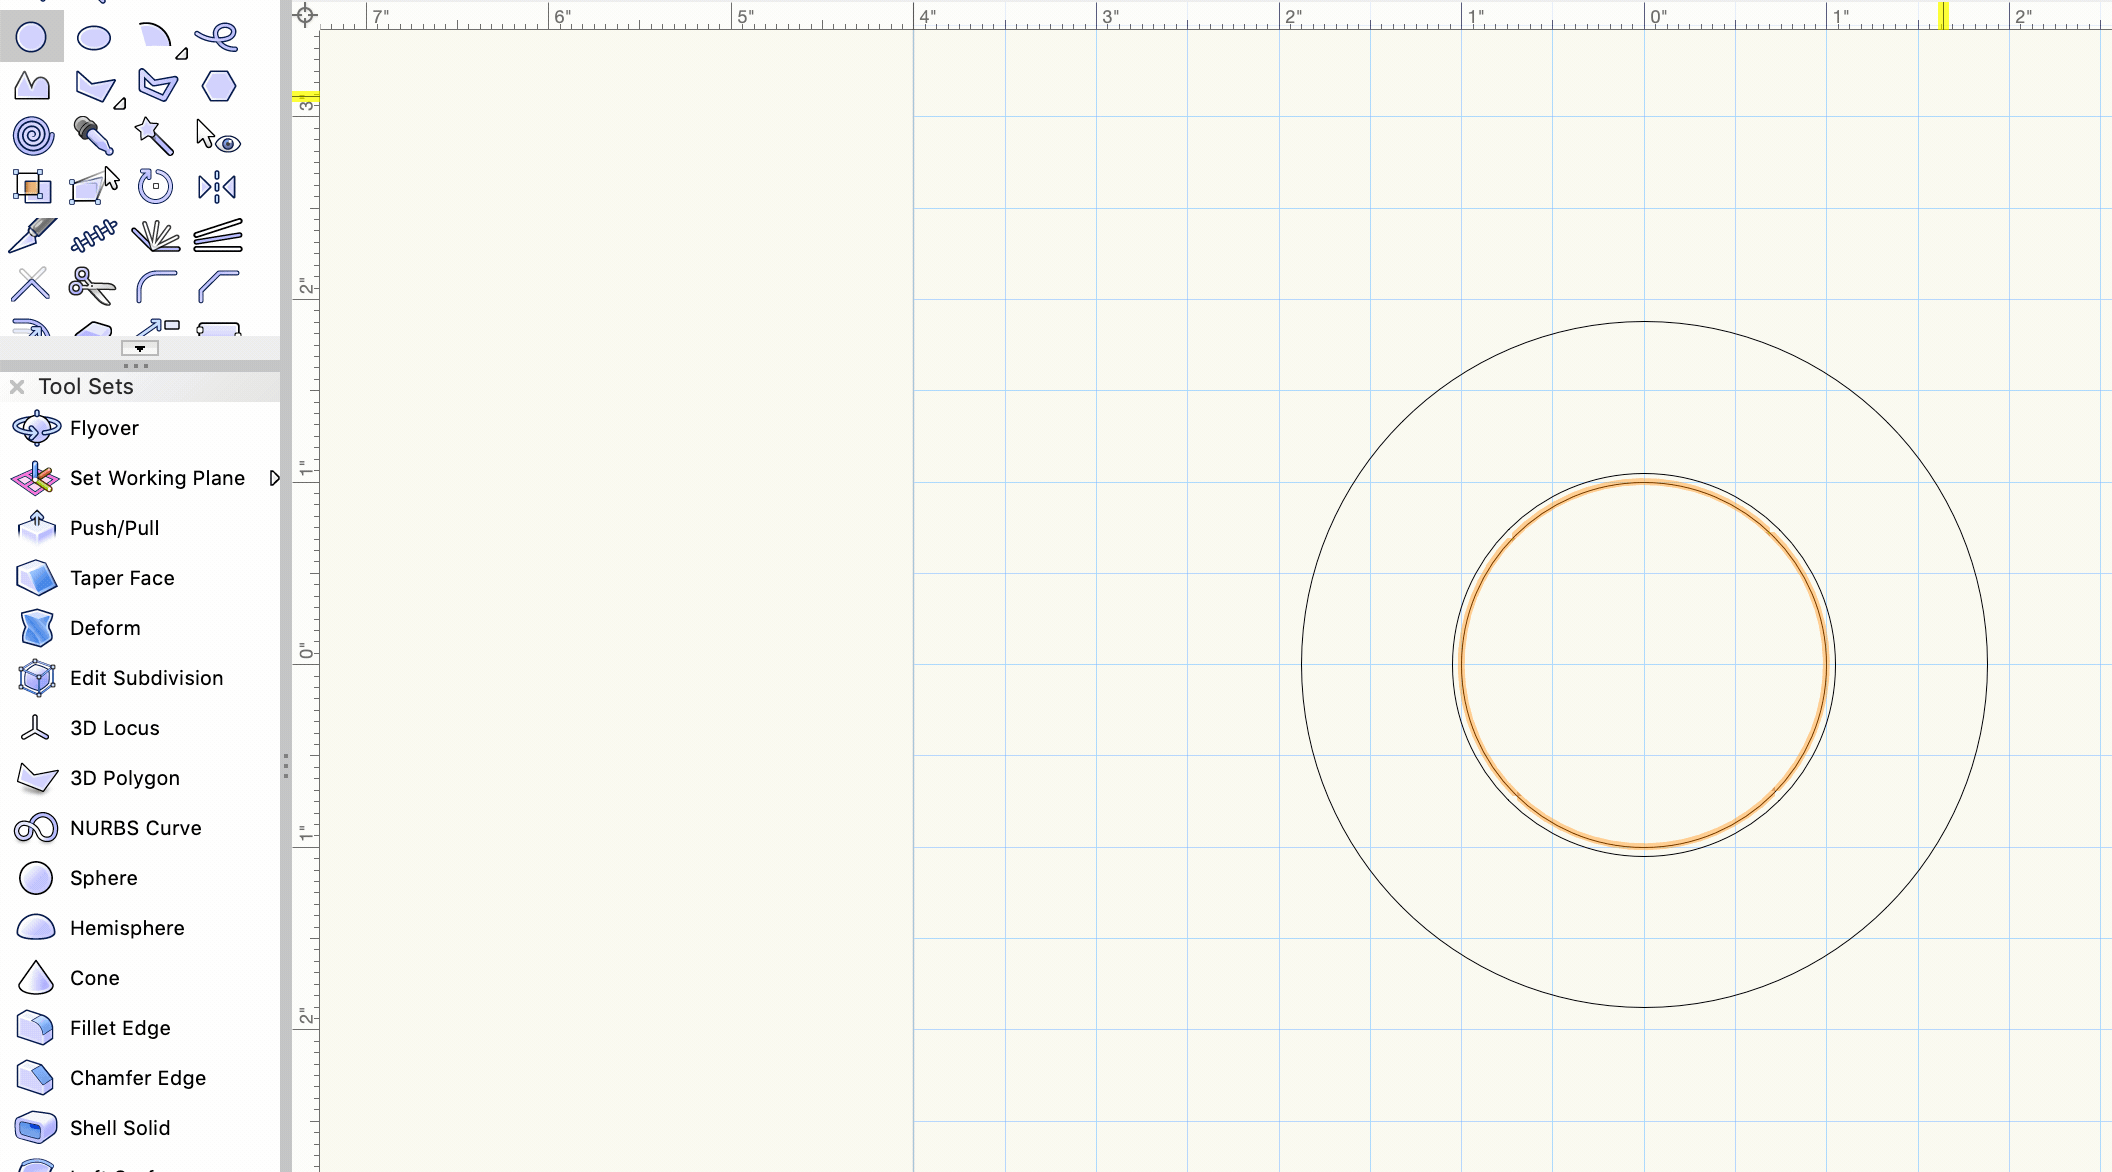 Circle drawing